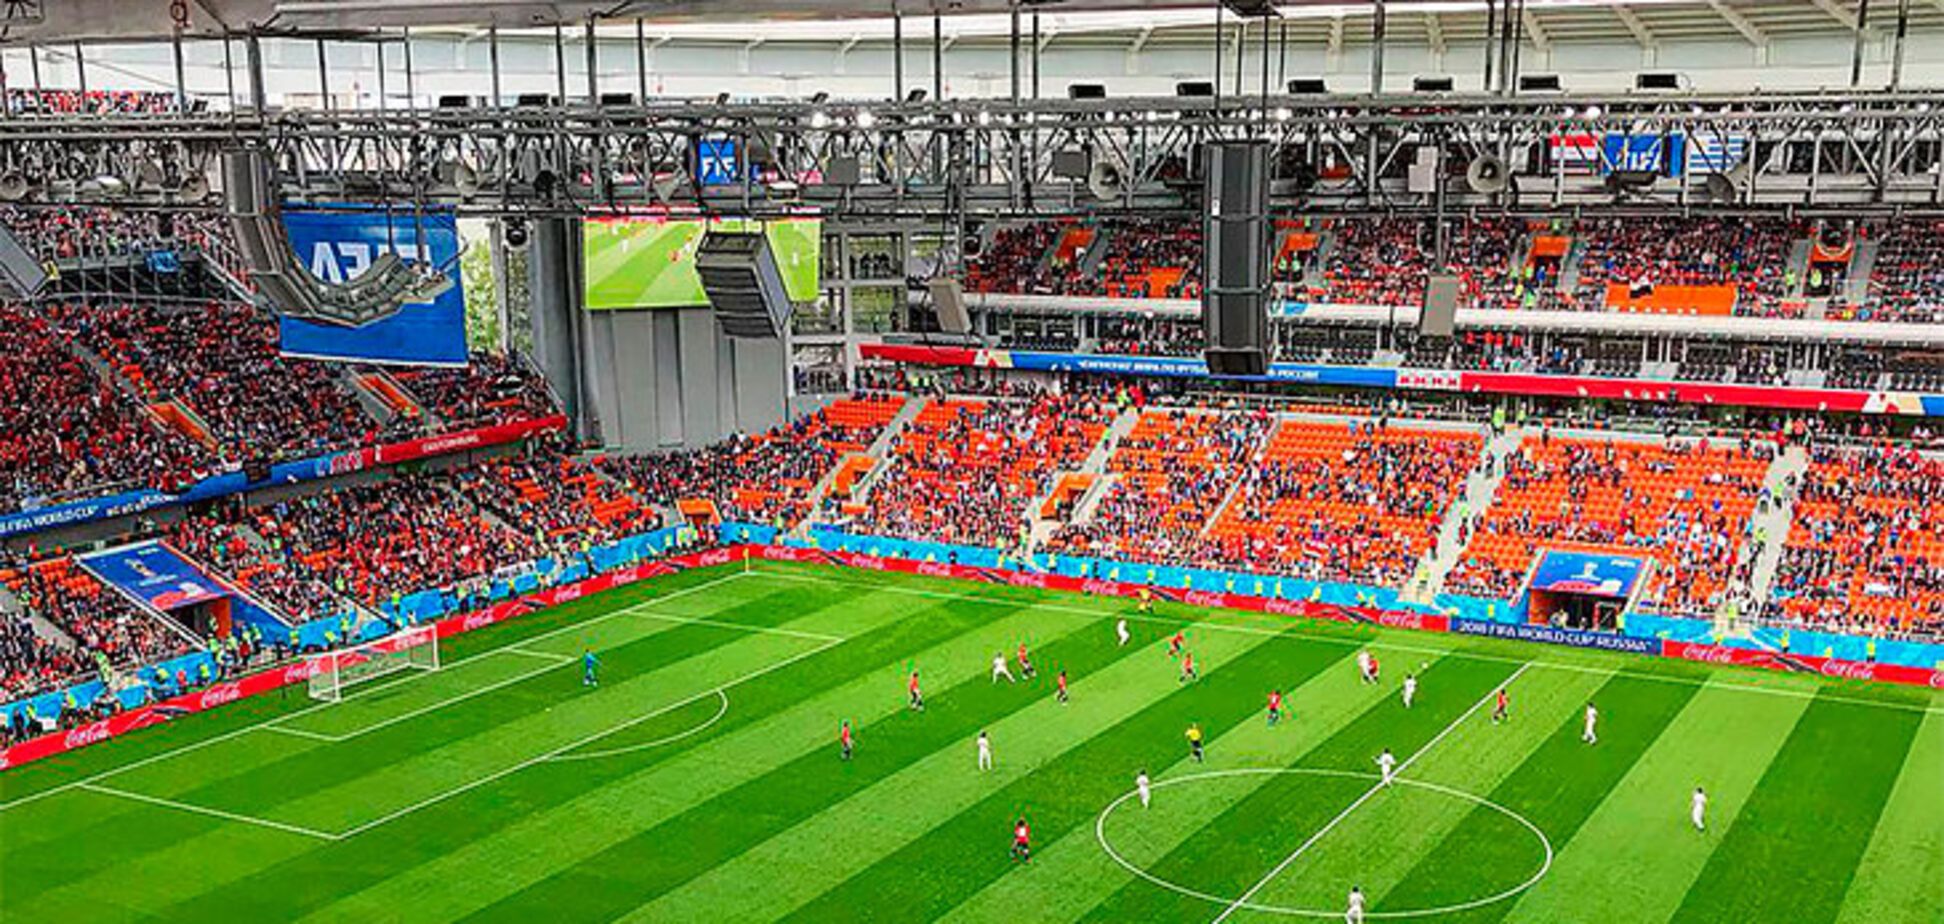 ФИФА нашла оправдание пустым местам на матче ЧМ-2018